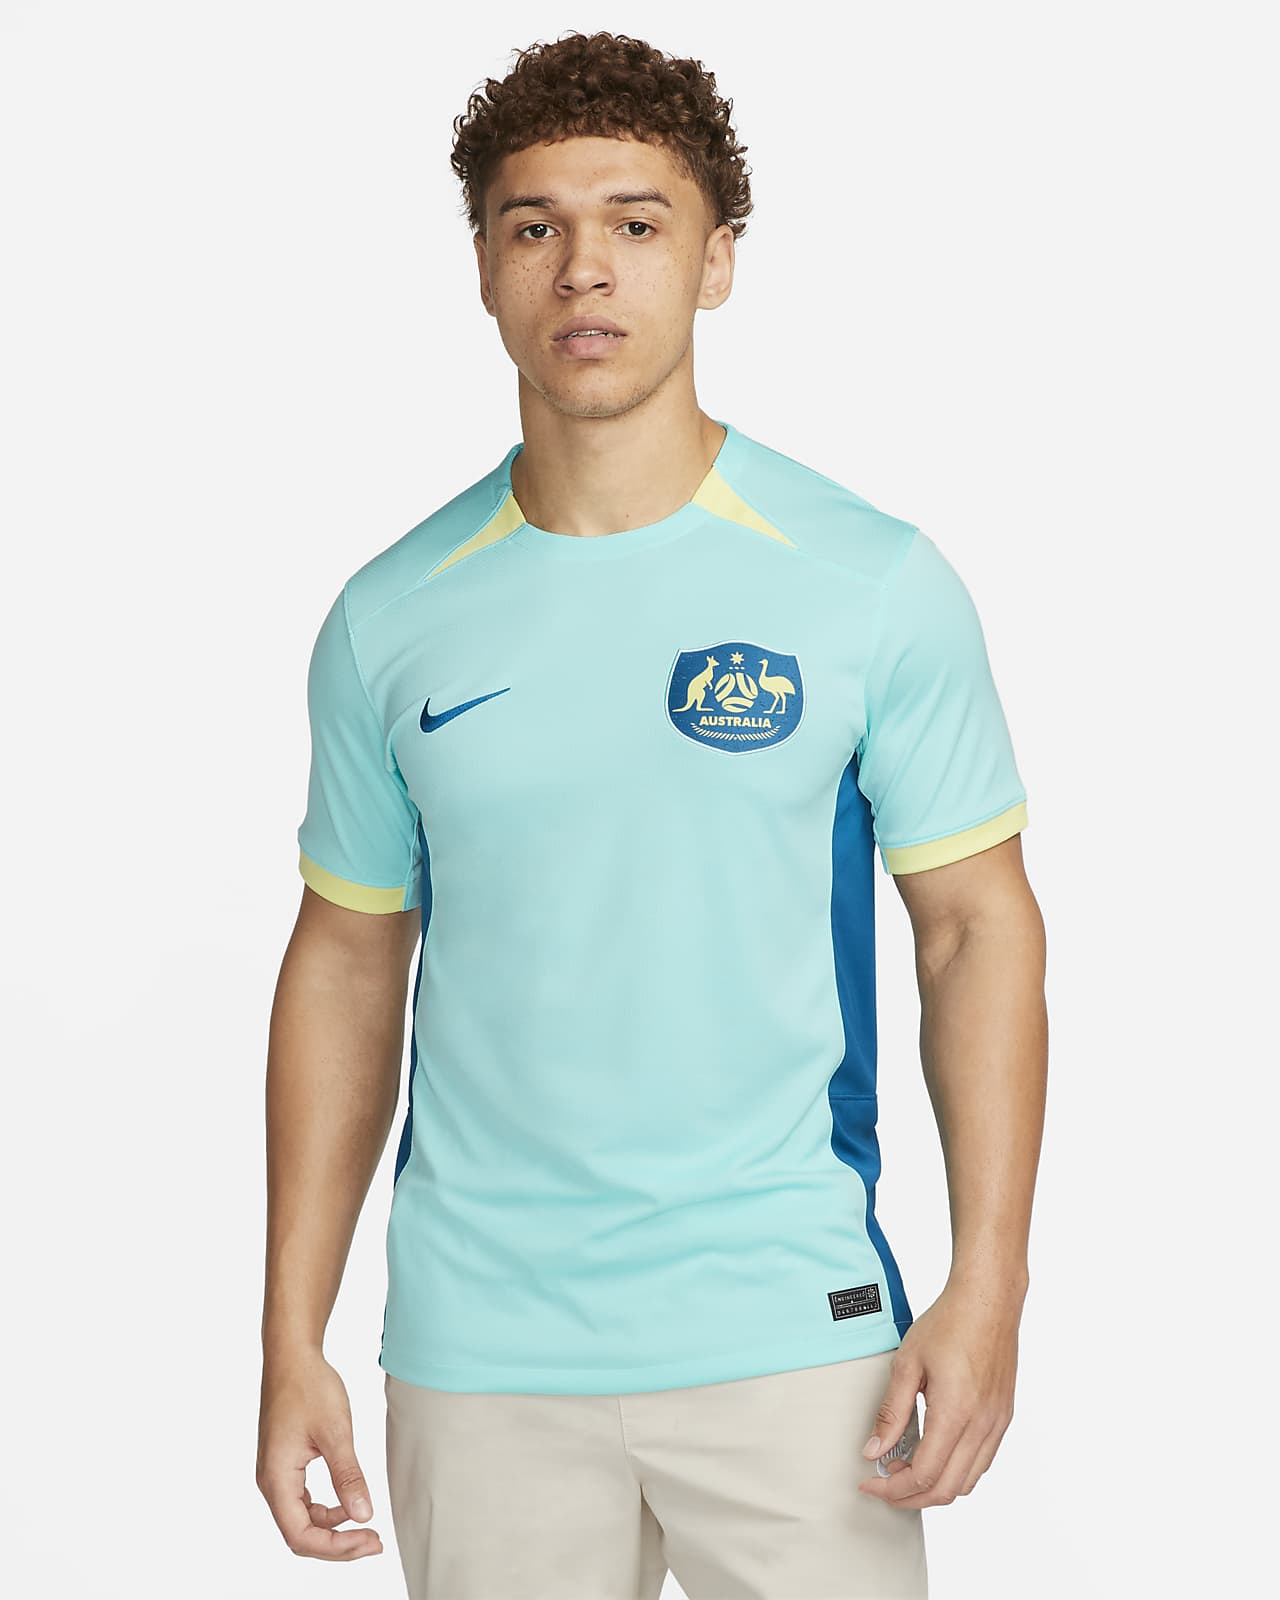 Camisetas Equipaciones Fútbol Nike Hombre